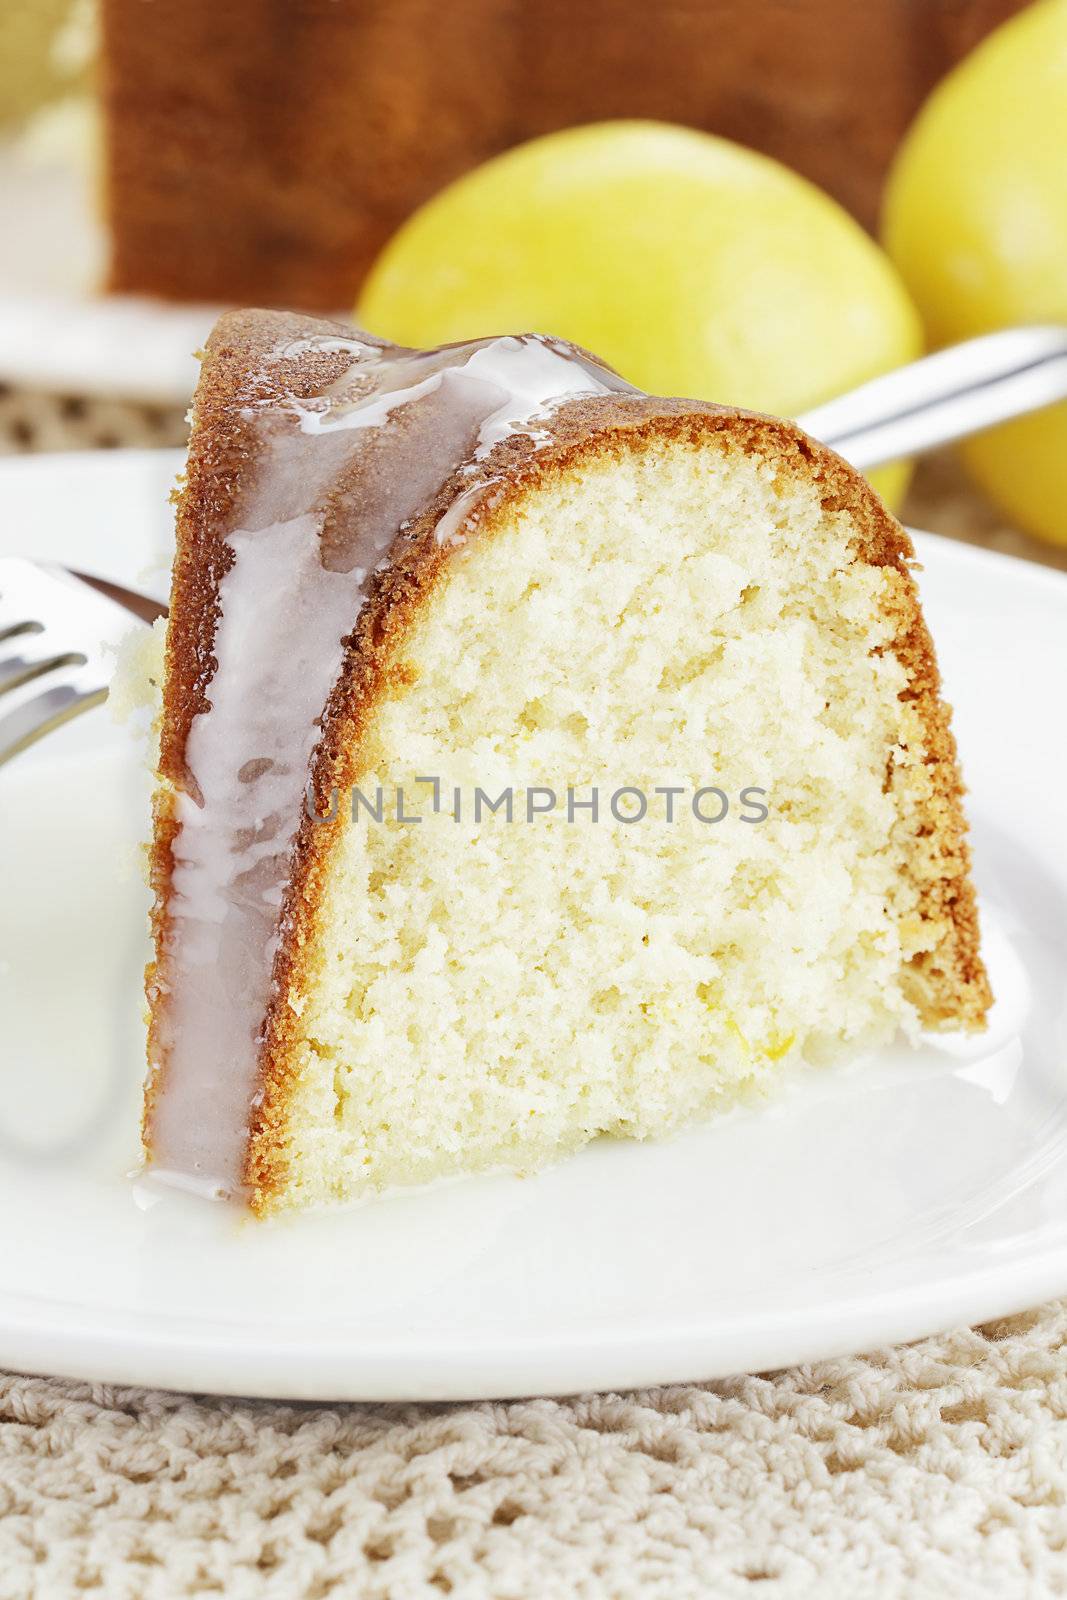 Slice of moist lemon bundt cake with lemons and cake in background. Shallow depth of field.